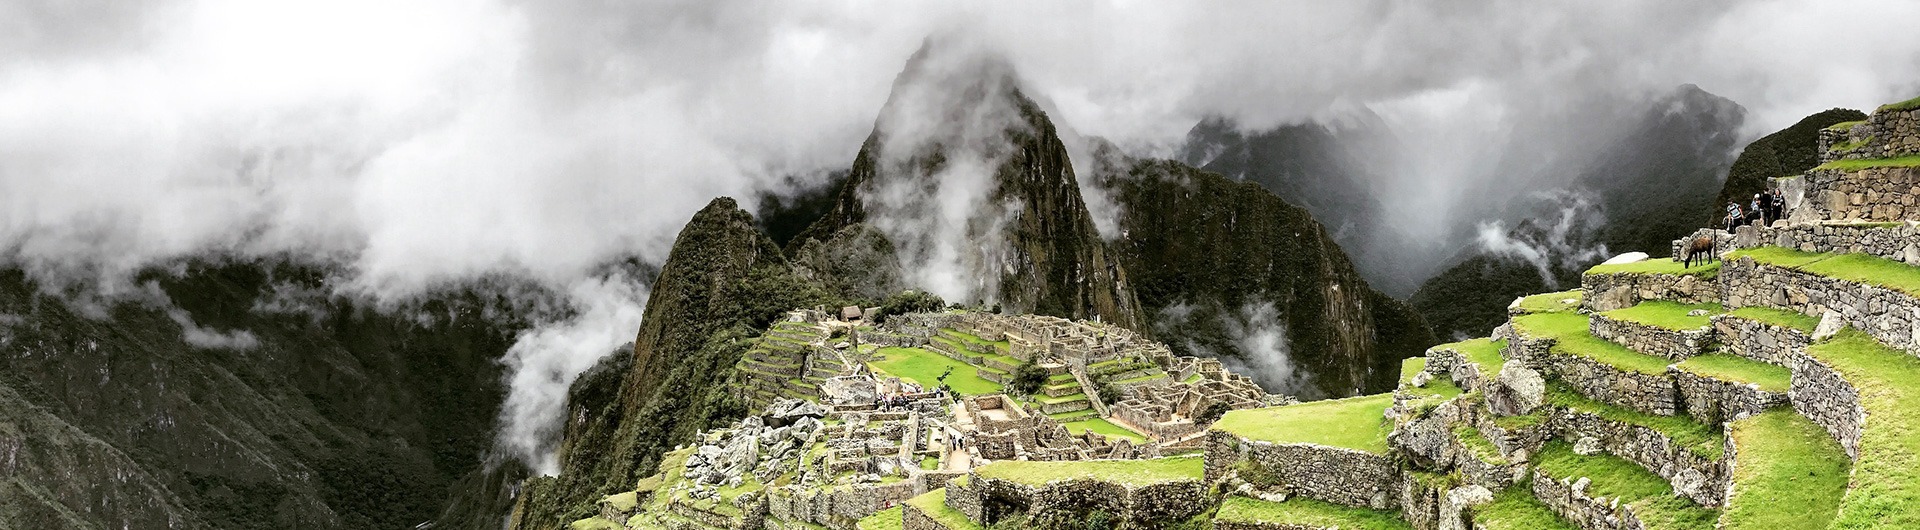 Machu Picchu partially shrouded in clouds, Peru